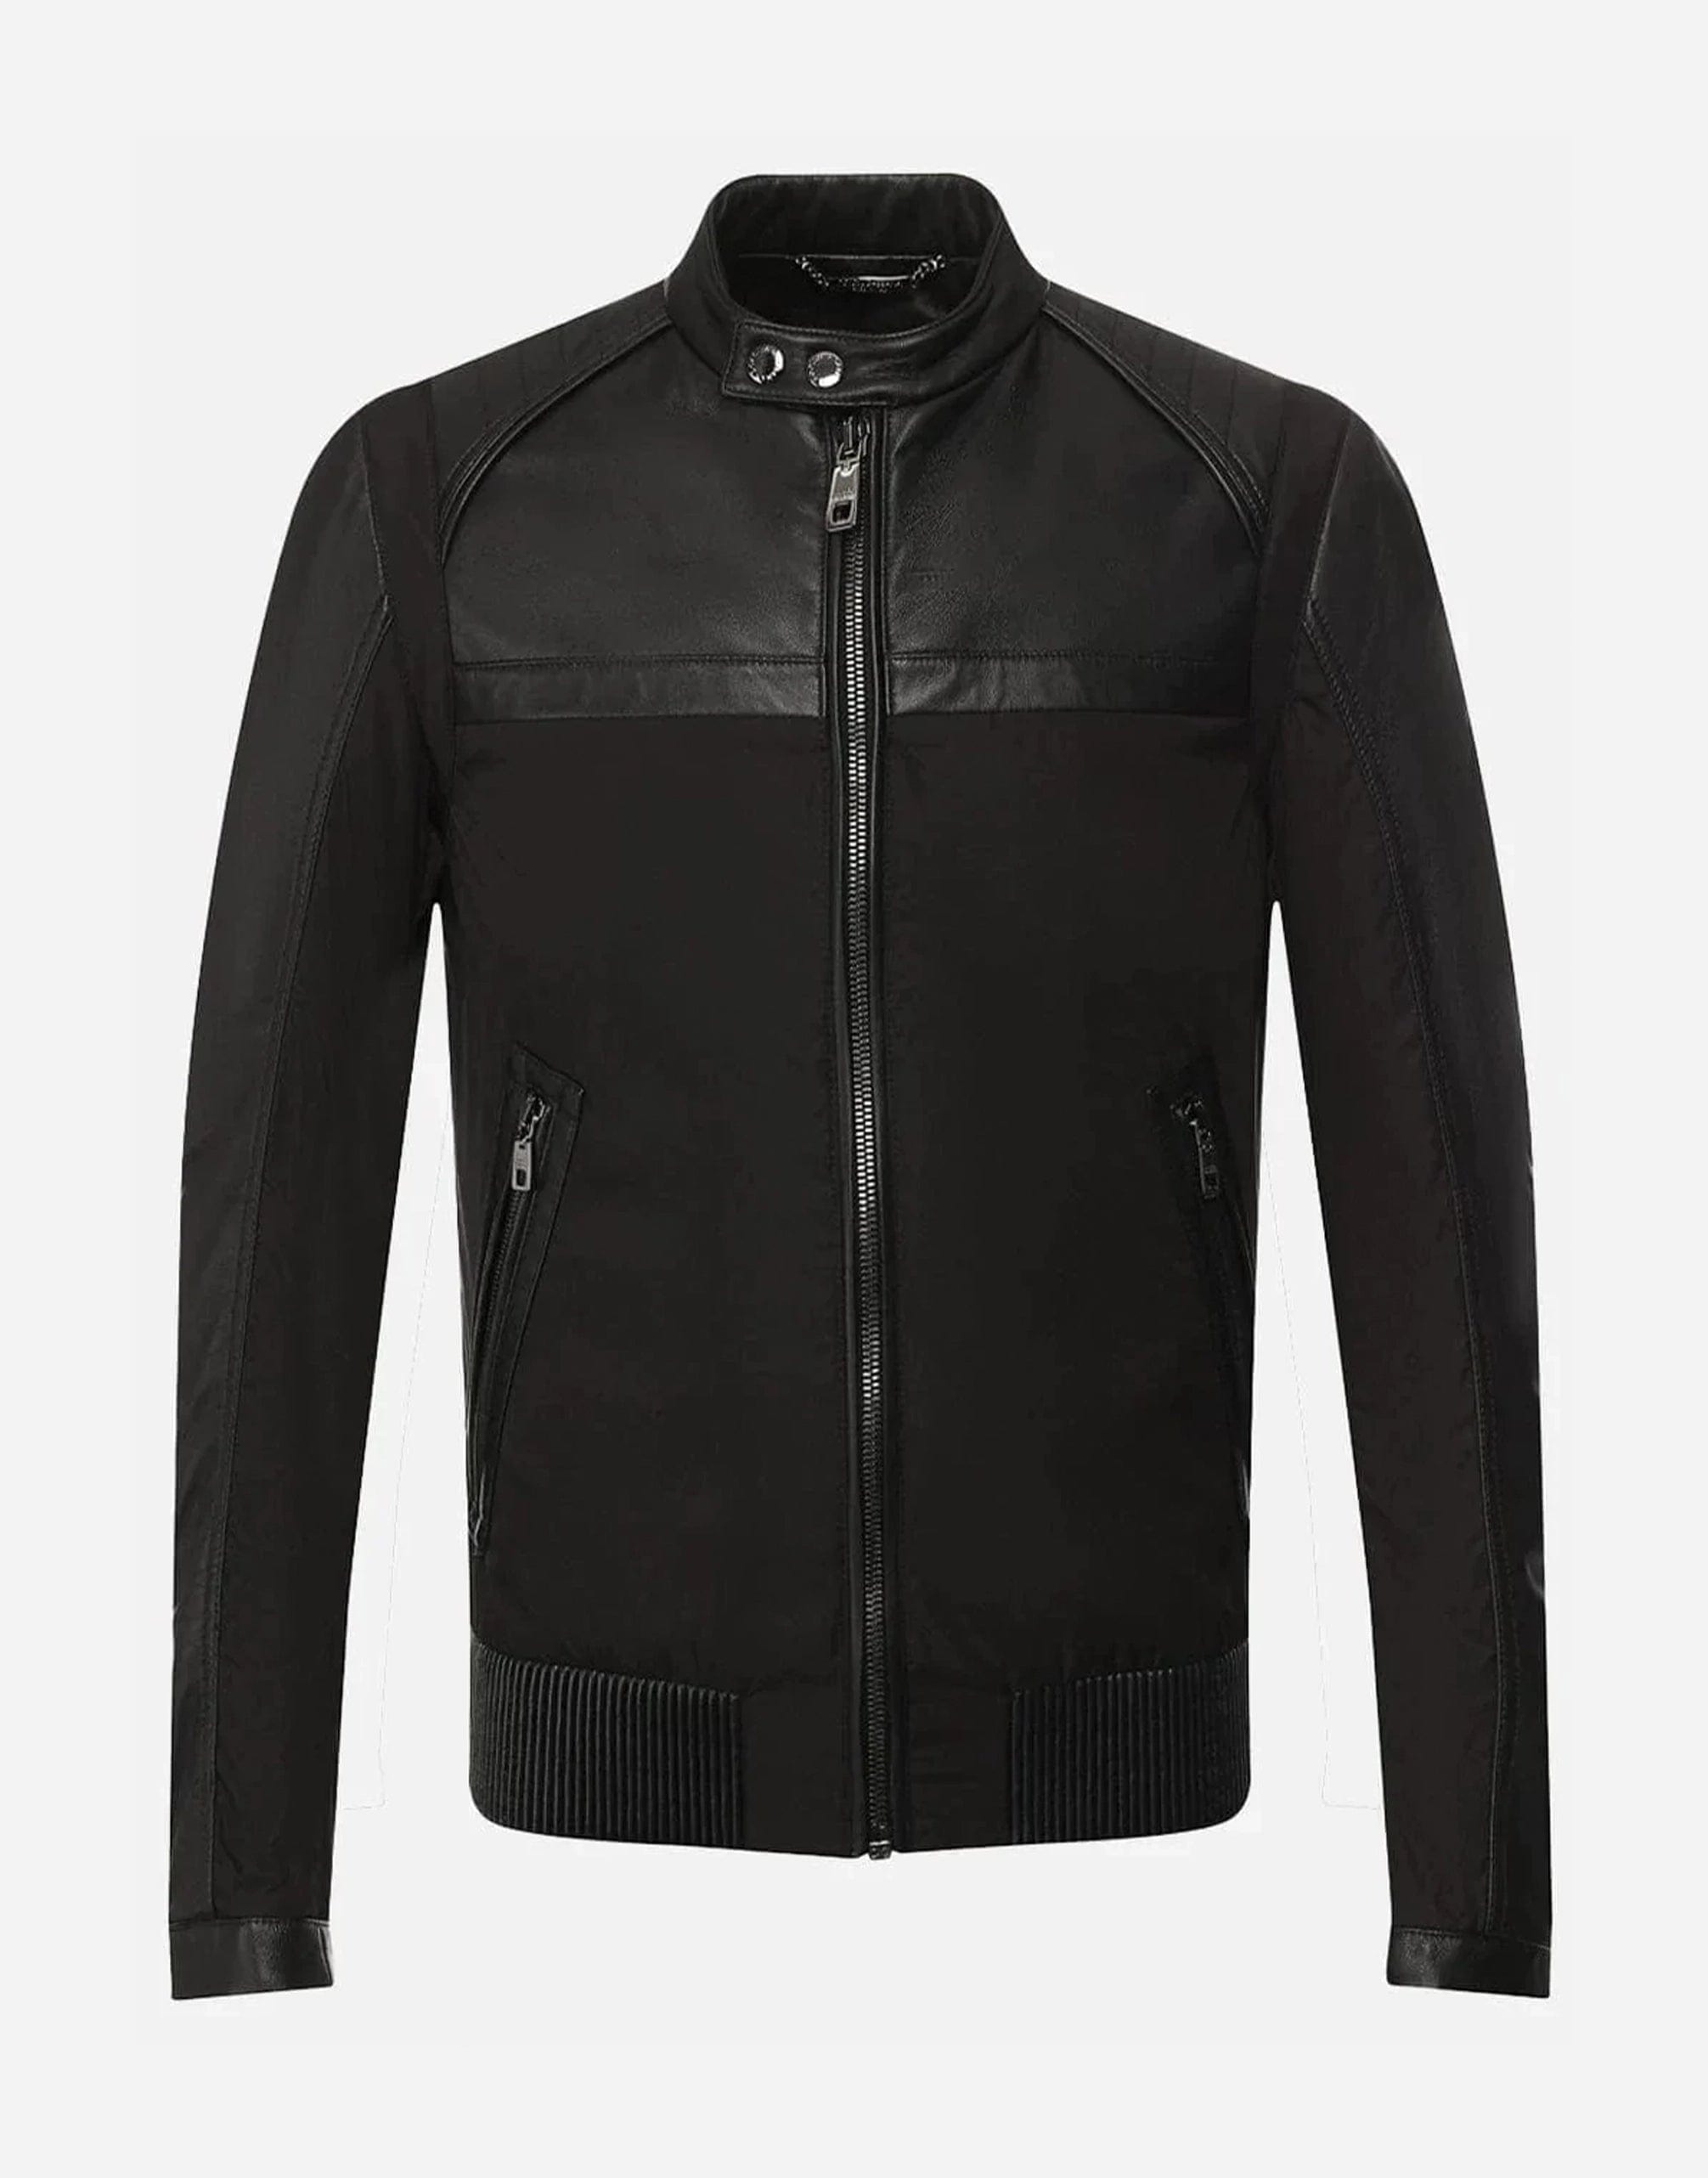 Dolce & Gabbana Leather Bomber Jacket